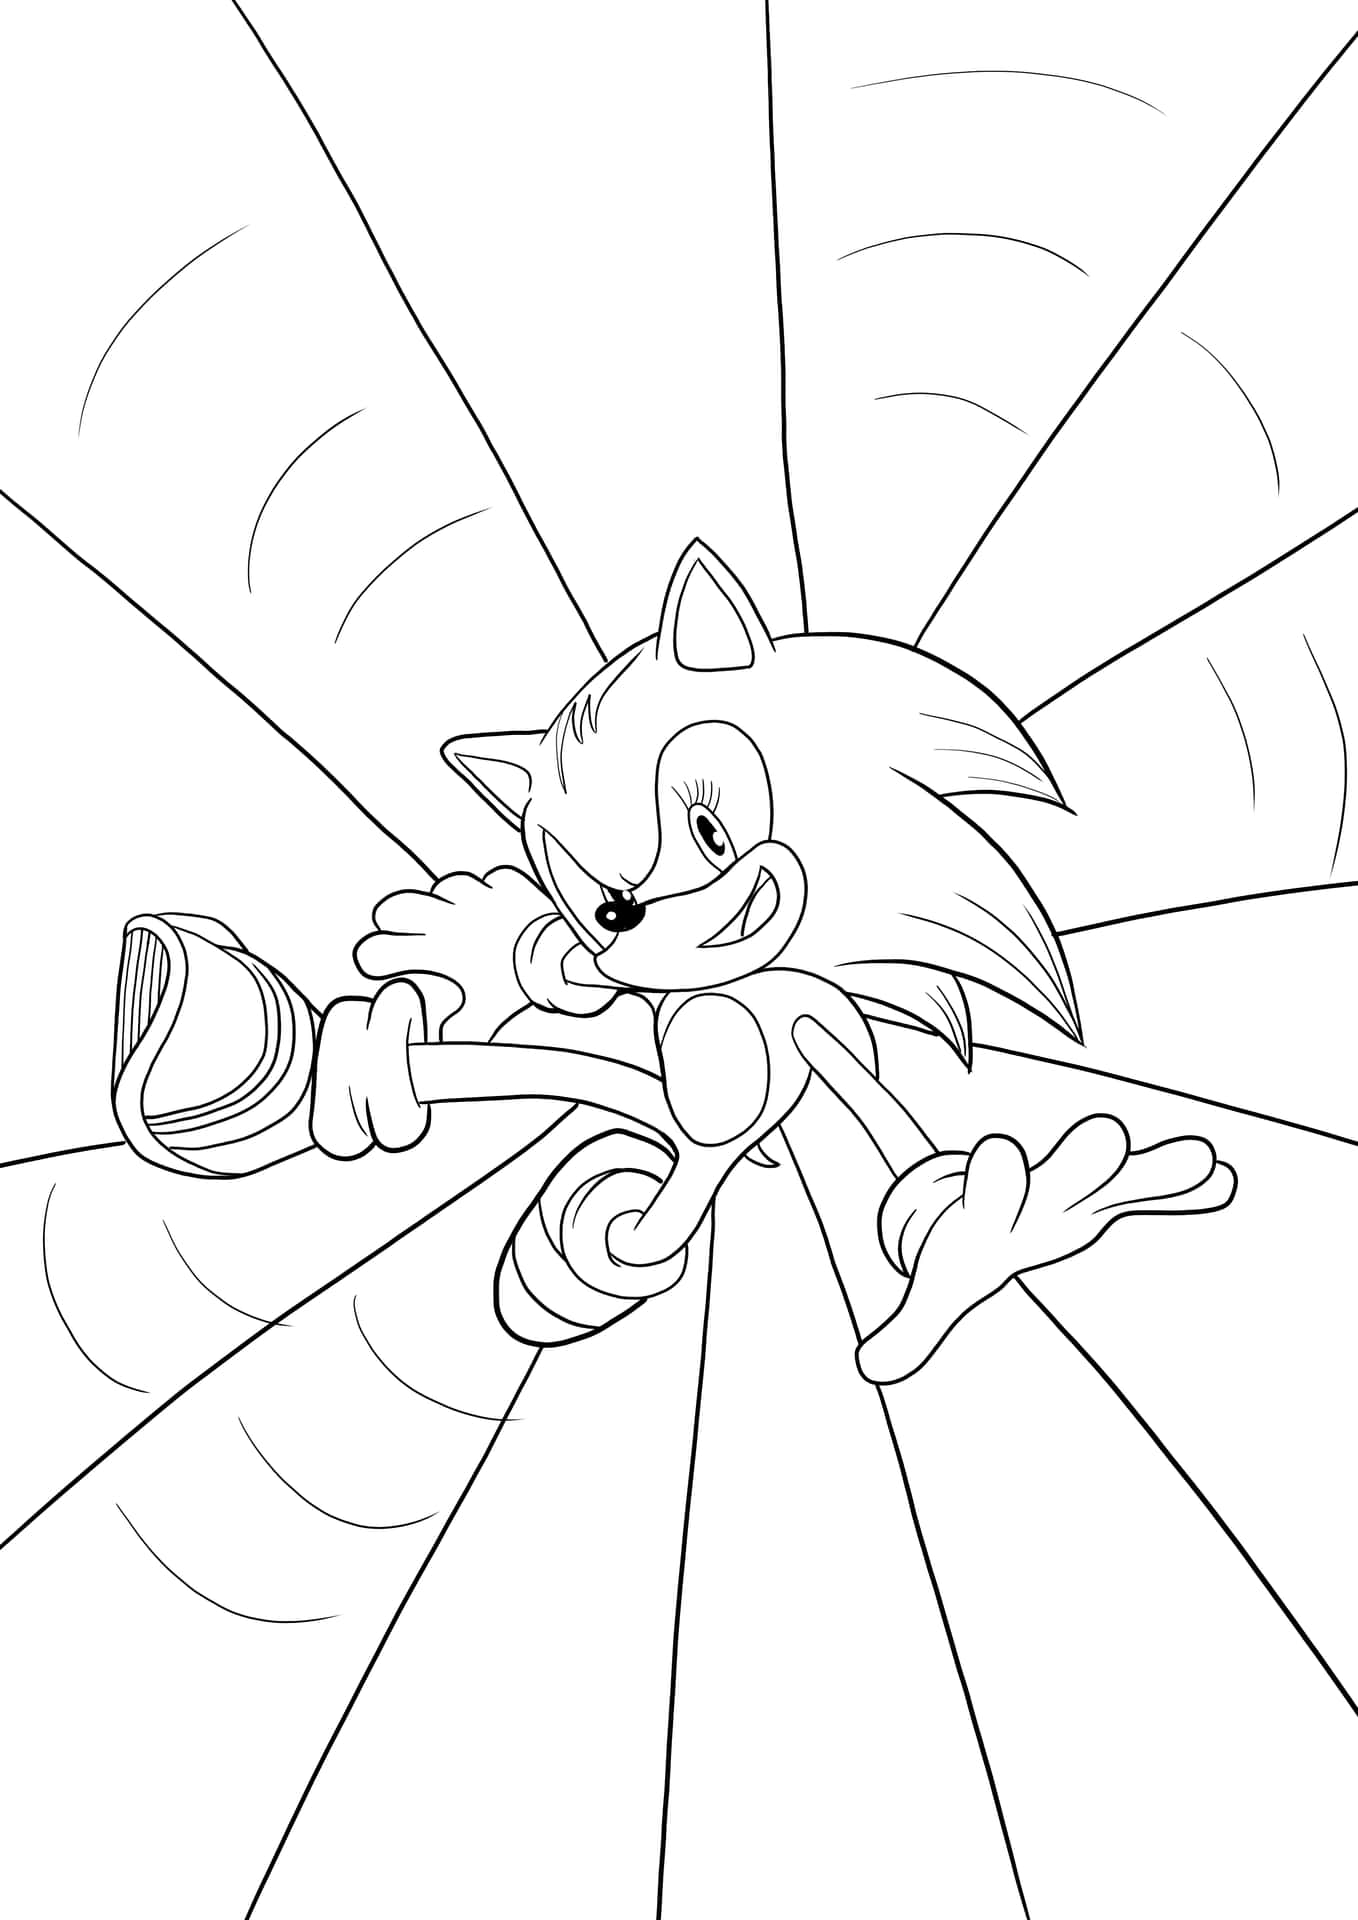 Sonicfärgläggningsbild Med Super Sonic Sparkbild.